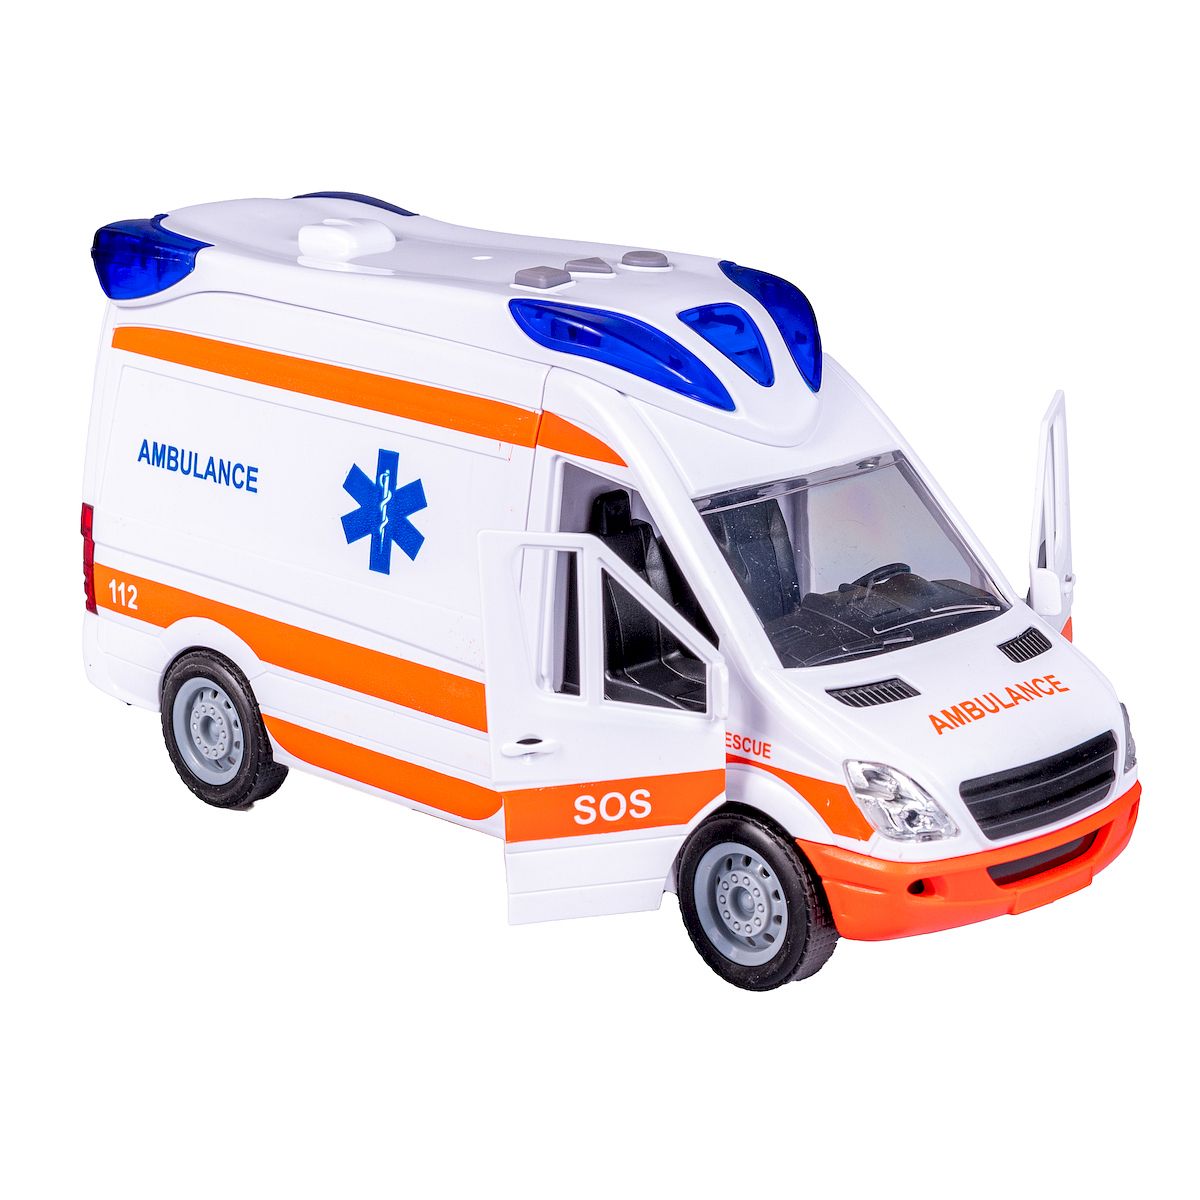 Ambulans z noszami Anek (SP83876)